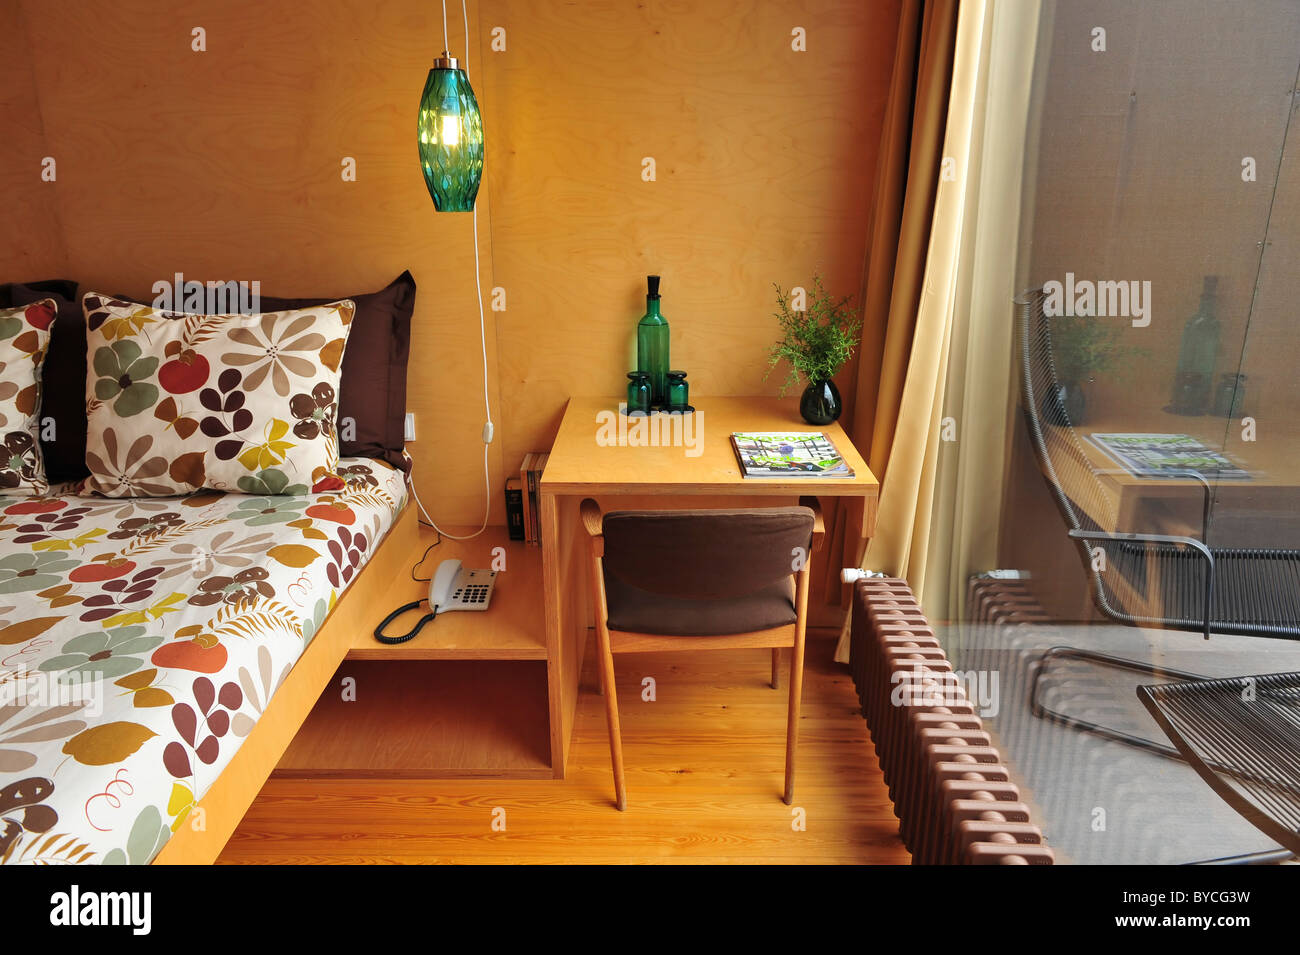 Eingestellt am Krankenbett grünes Glaslampe, Nachttisch mit Telefon, Gläser und Flasche, Stuhl, Fenster und Öl-Heizung Stockfoto